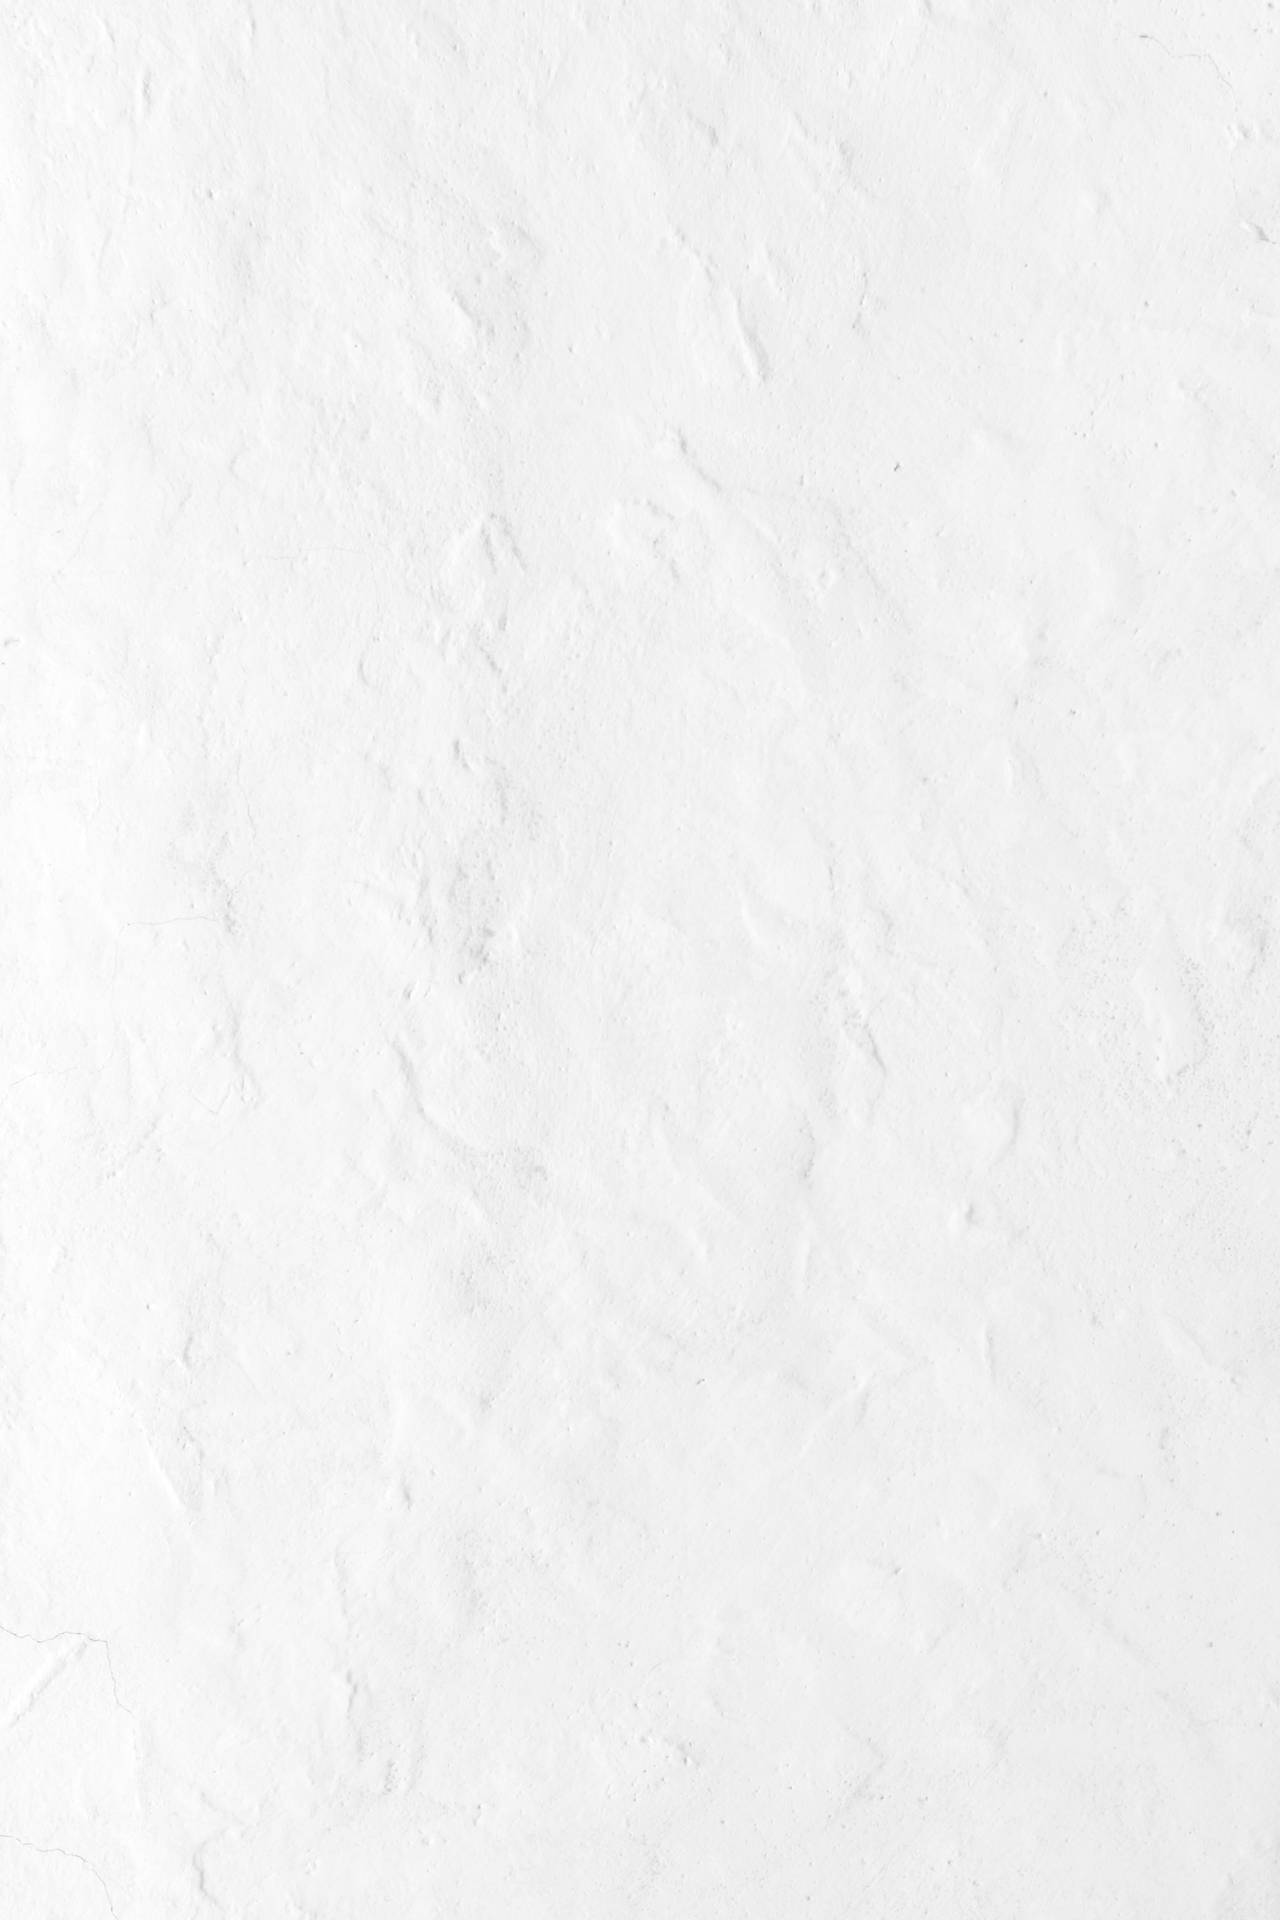 White 3456X5184 wallpaper